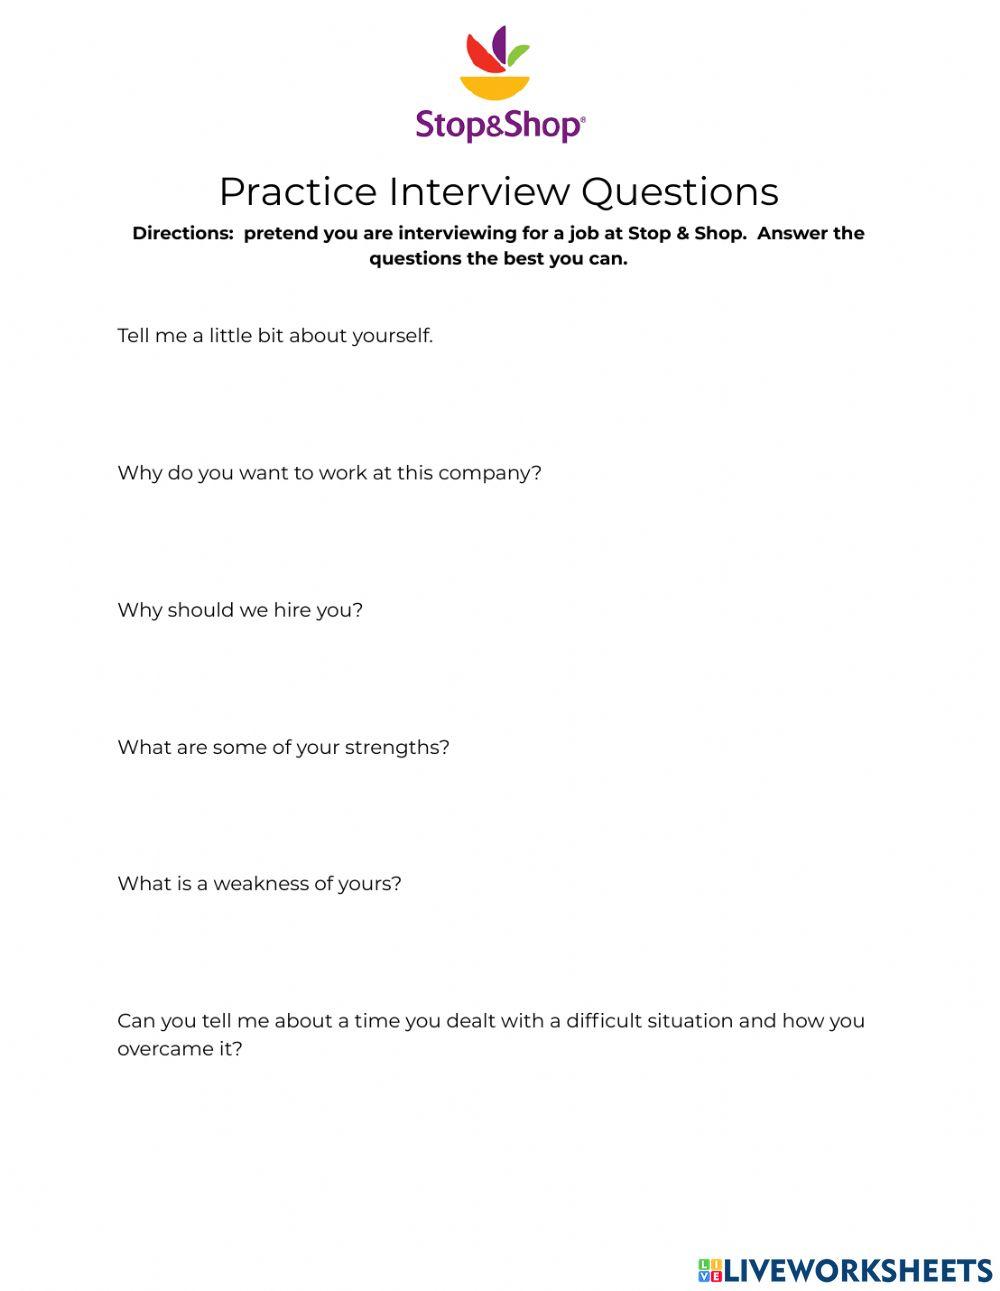 Practice Interview